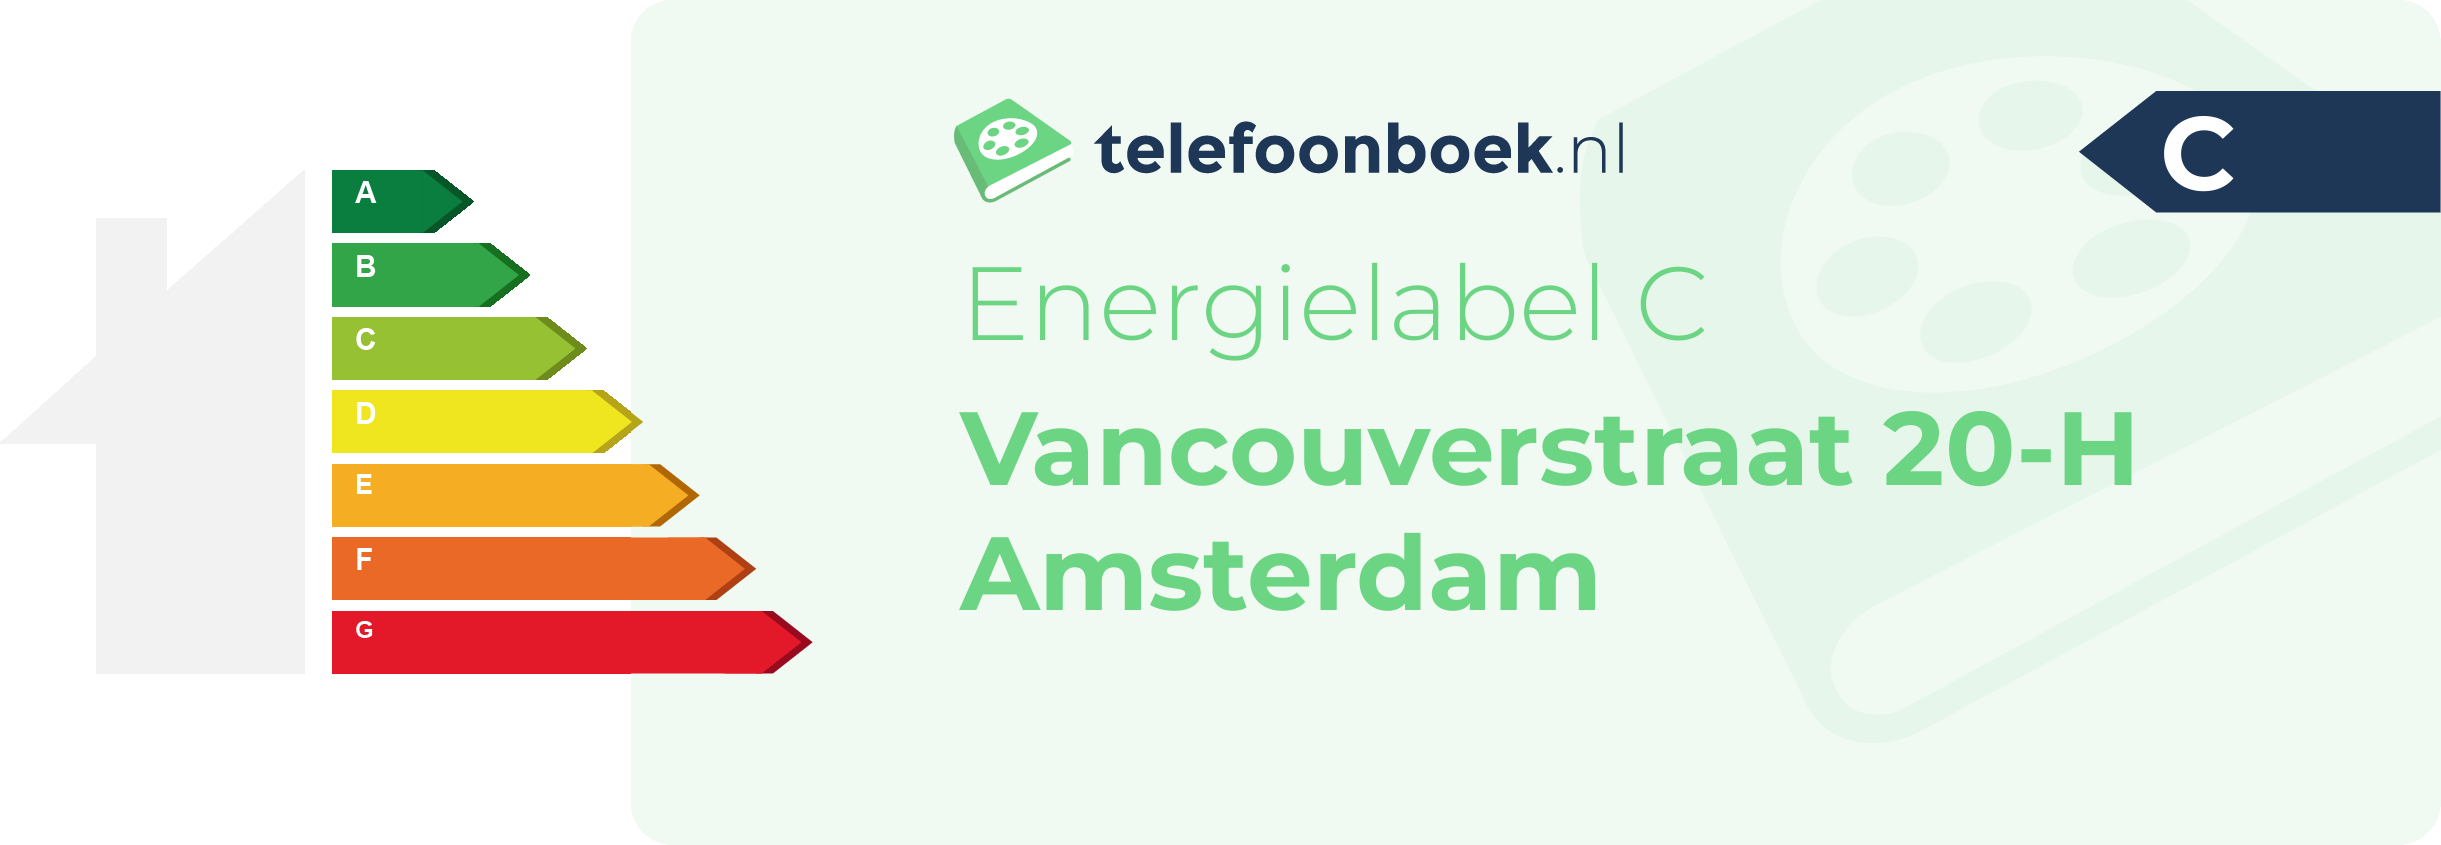 Energielabel Vancouverstraat 20-H Amsterdam